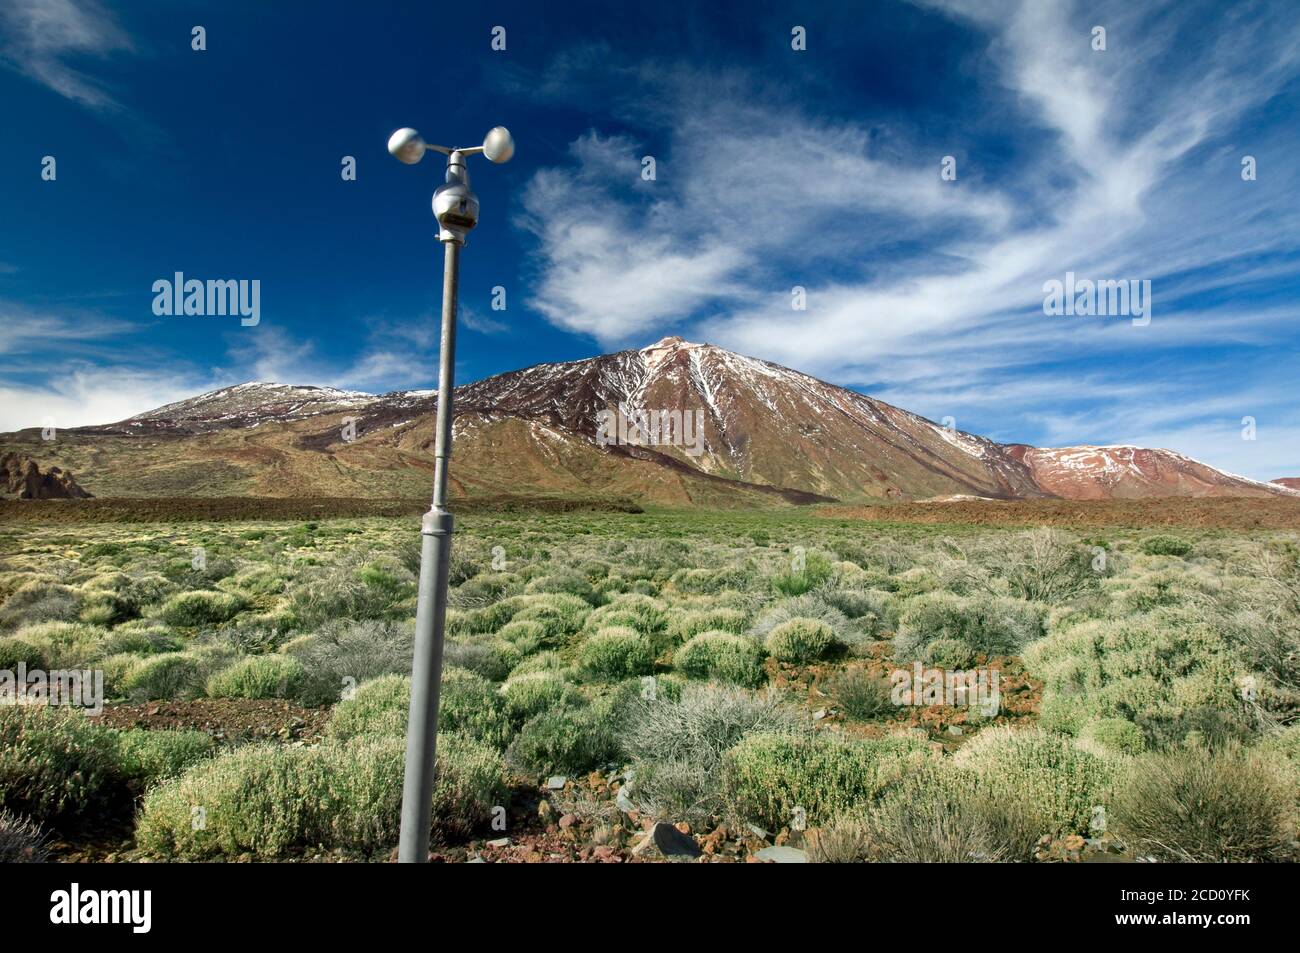 ANEMOMETER Klimawandel Globales Erwärmungs-Monitoring-Konzept mit Windsensor Anemometer genau kalibriert Wetterbedingungen im Teide Nationalpark, Teide, Teneriffa, Kanarische Inseln Spanien Stockfoto